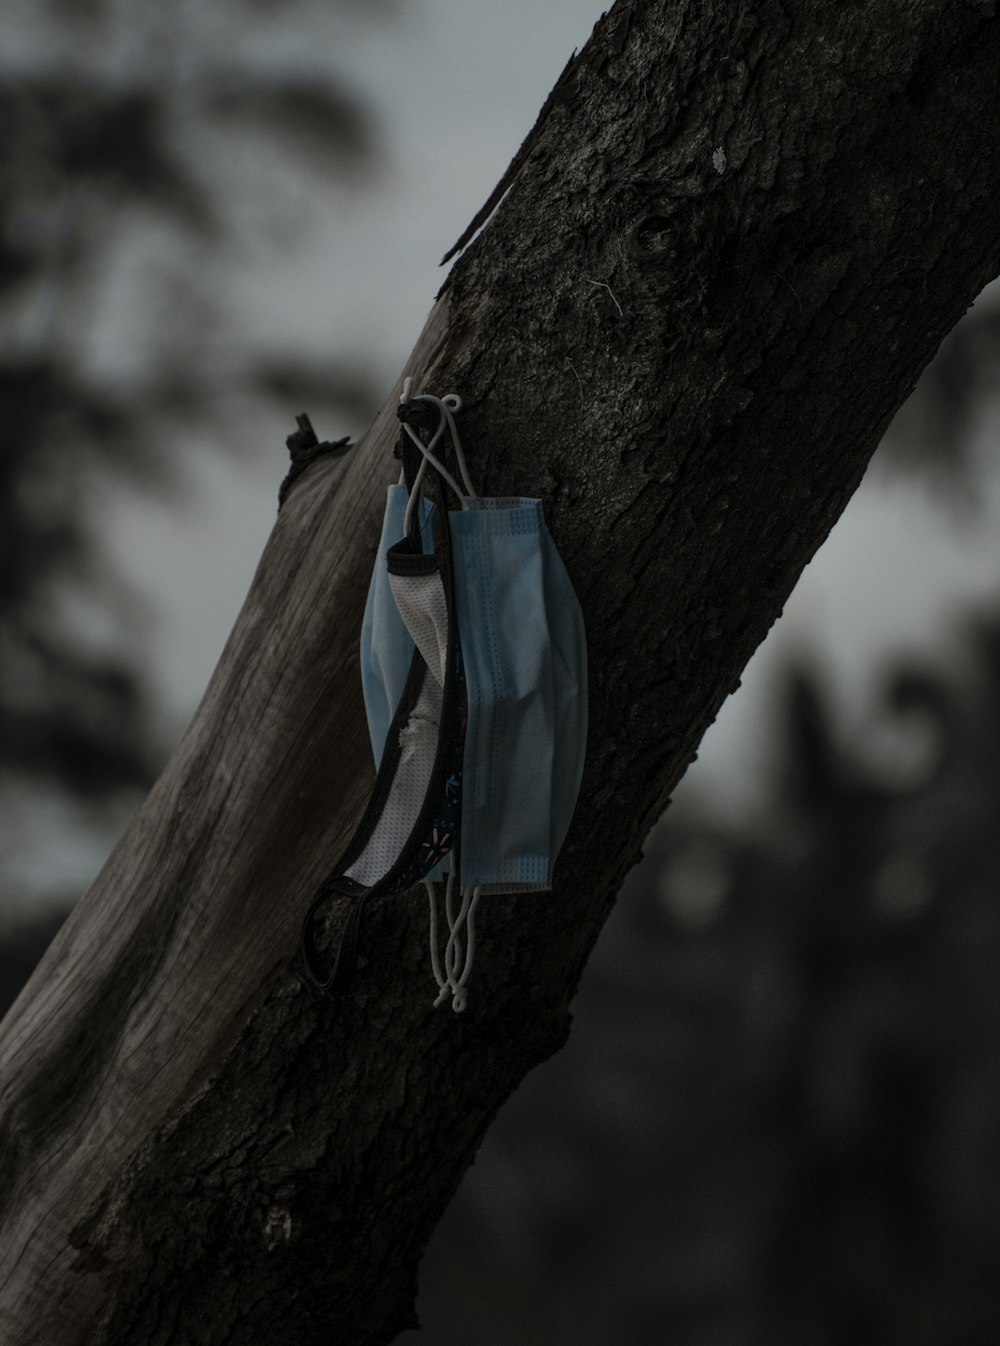 茶色の木の枝にぶら下がっている青と白の巾着袋